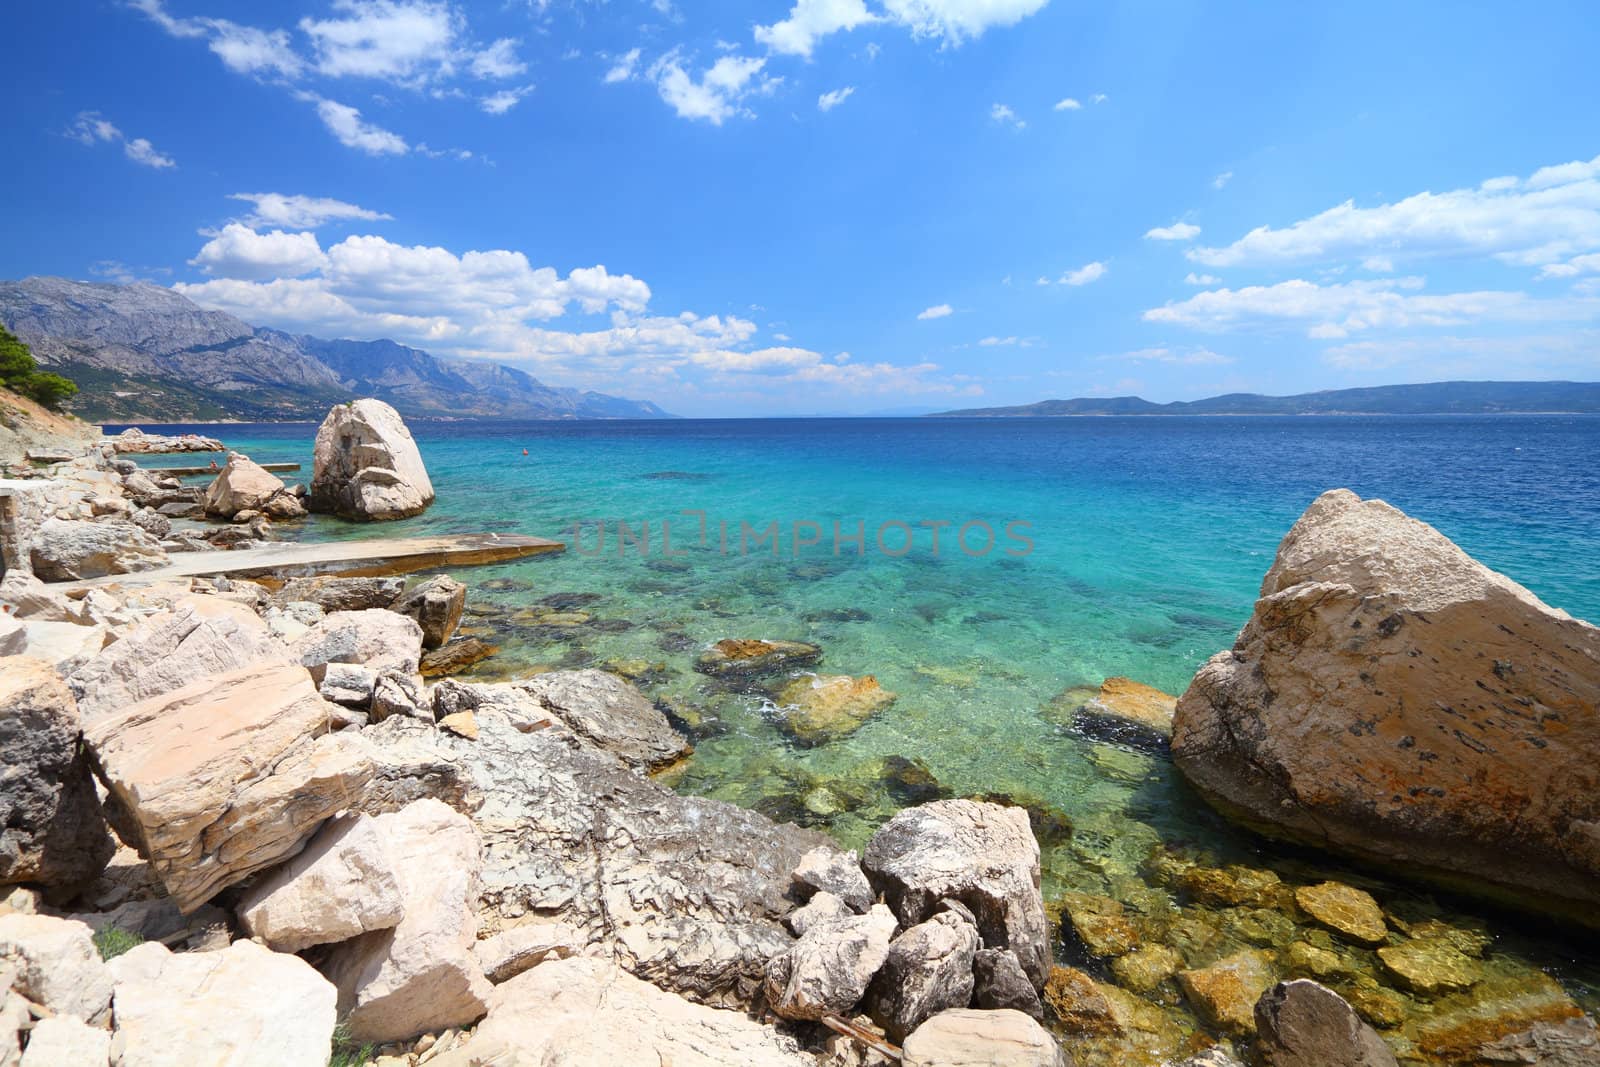 Croatia - beautiful Mediterranean coast landscape in Dalmatia. Marusici beach - Adriatic Sea (Makarska Riviera region).